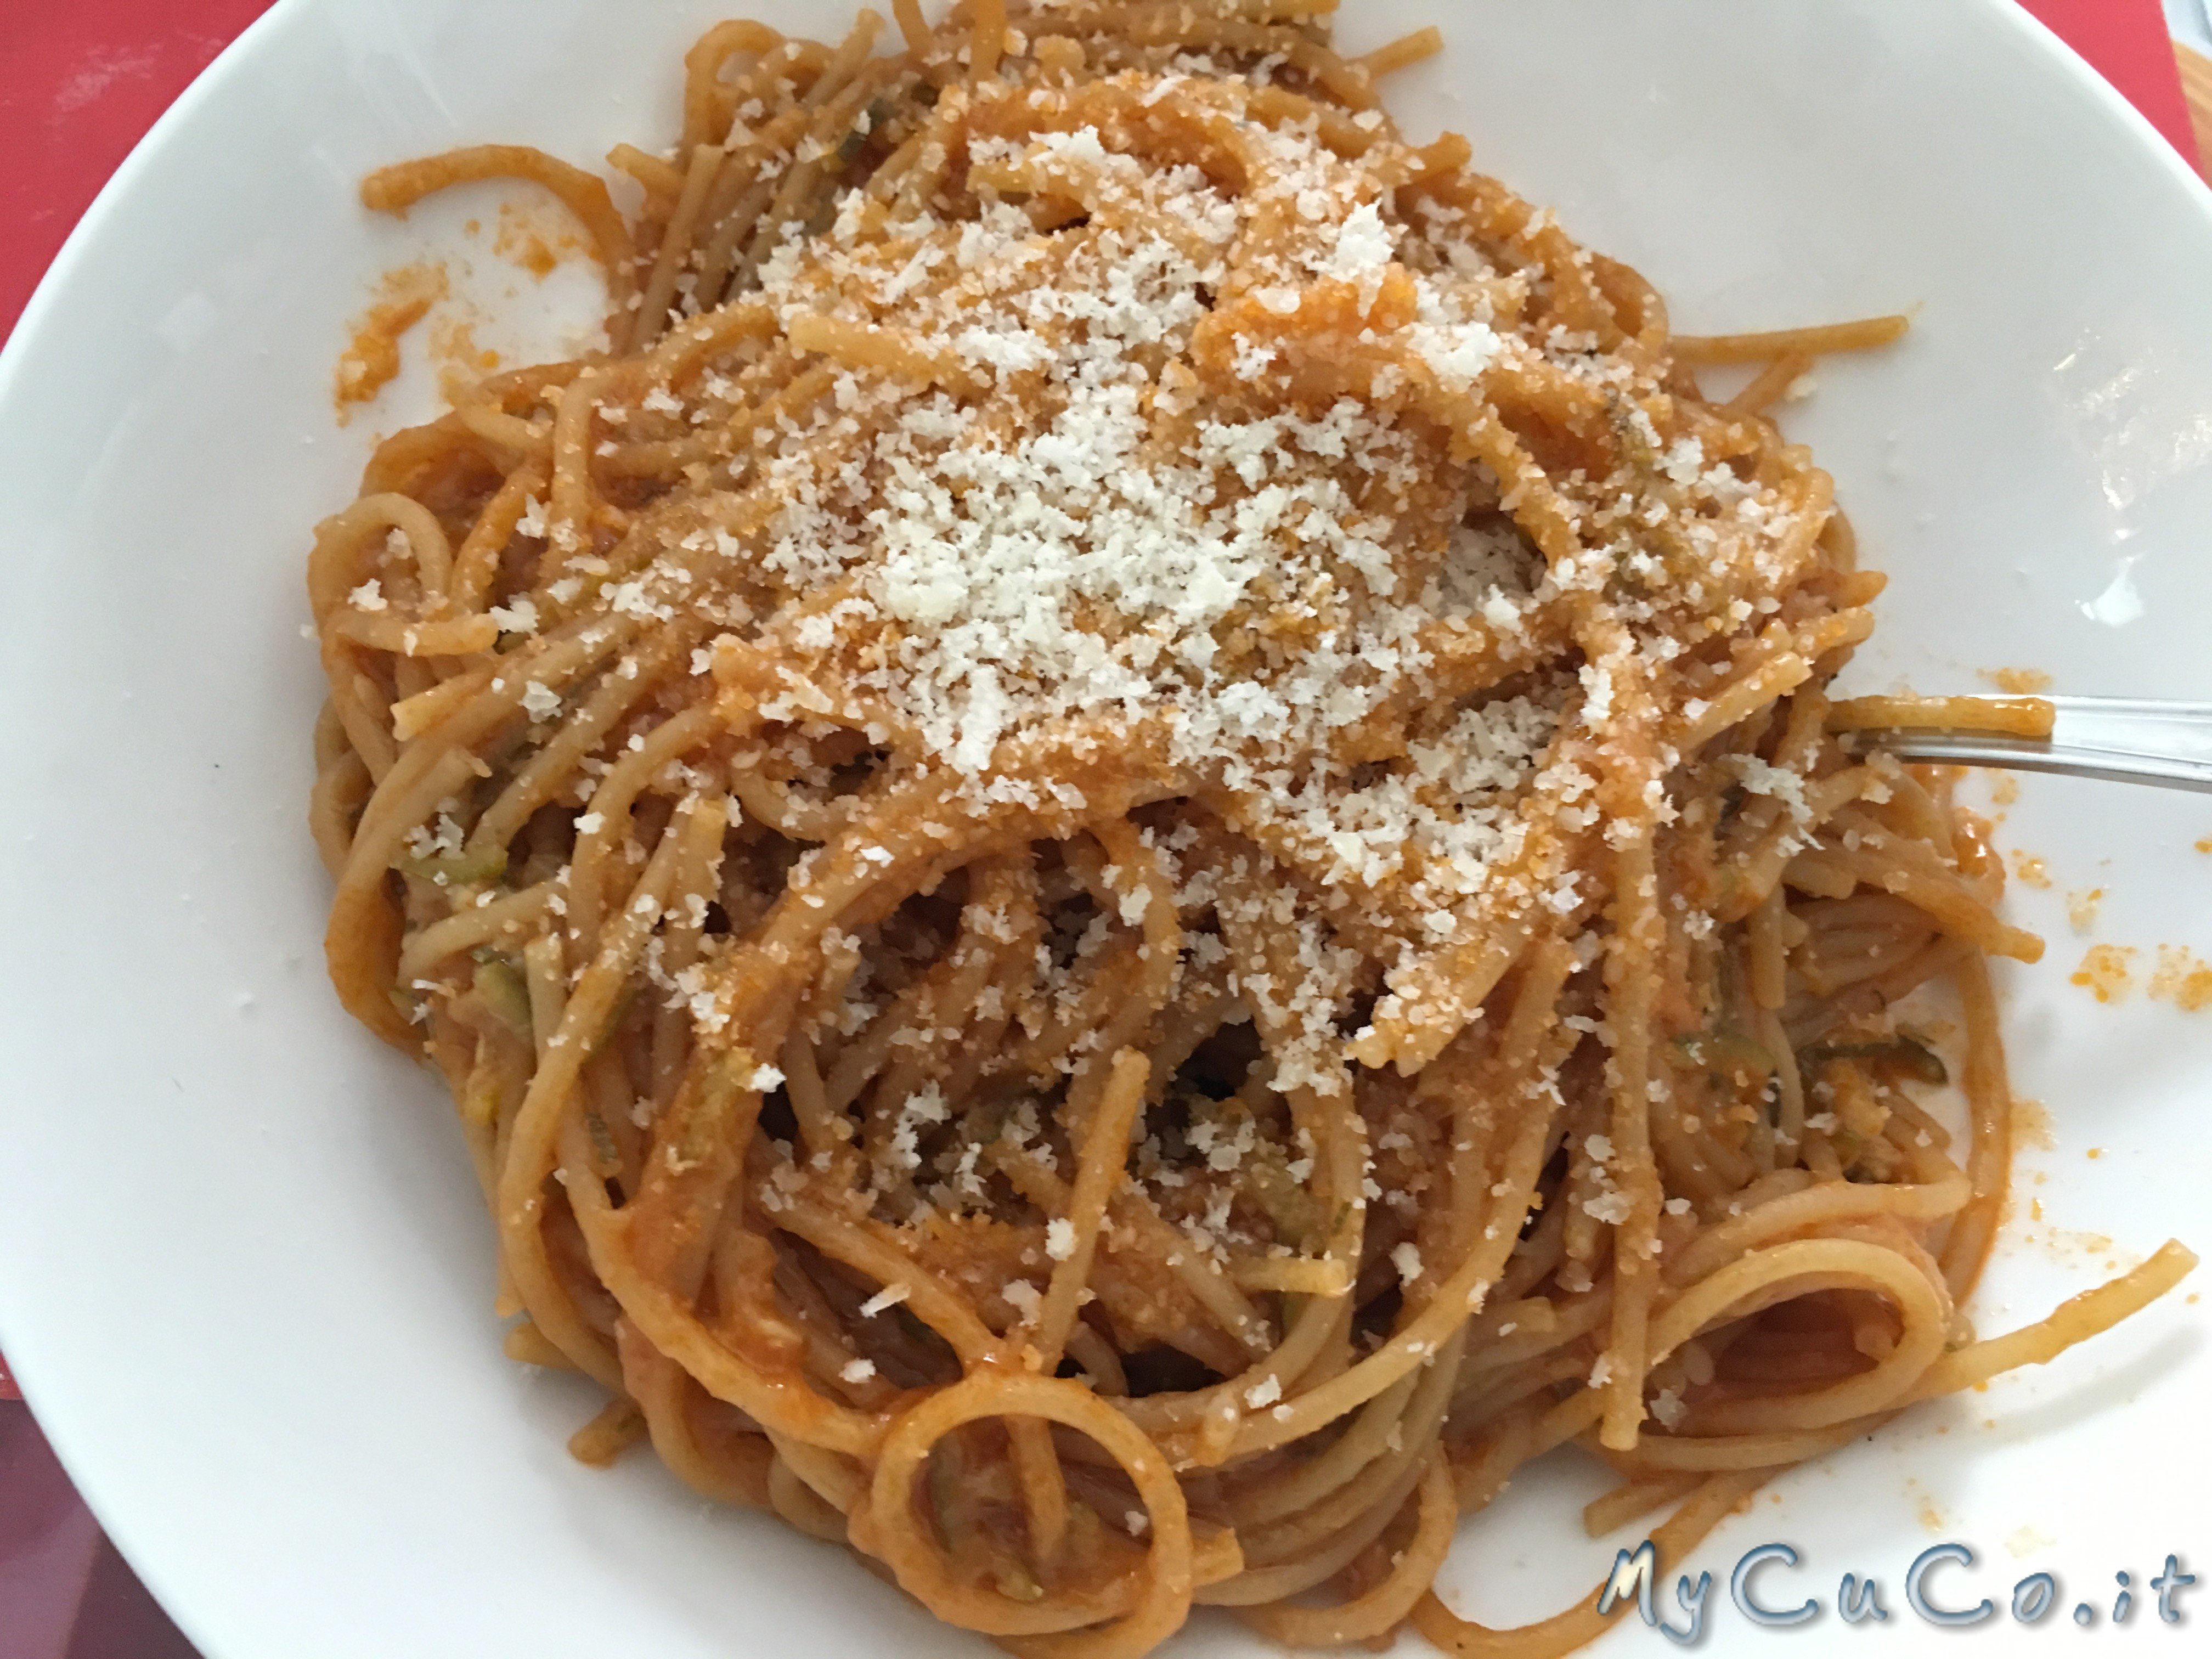 Spaghetti integrali al sugo di zucchine con il Companion  My CuCo -  Cuisine, i-Companion, XL, Gourmet e Touch Moulinex